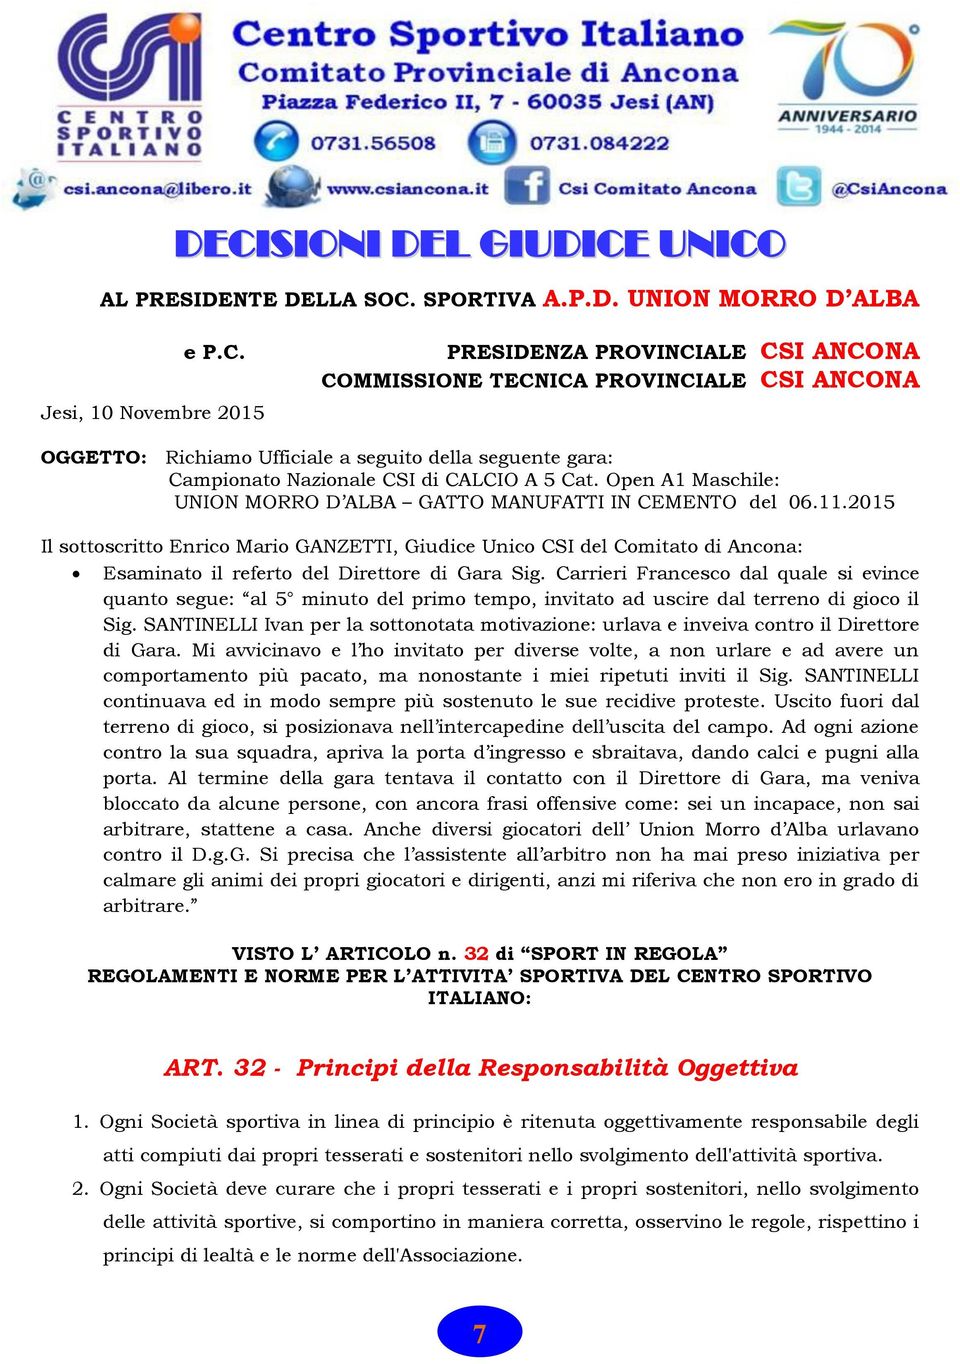 2015 Il sottoscritto Enrico Mario GANZETTI, Giudice Unico CSI del Comitato di Ancona: Esaminato il referto del Direttore di Gara Sig.